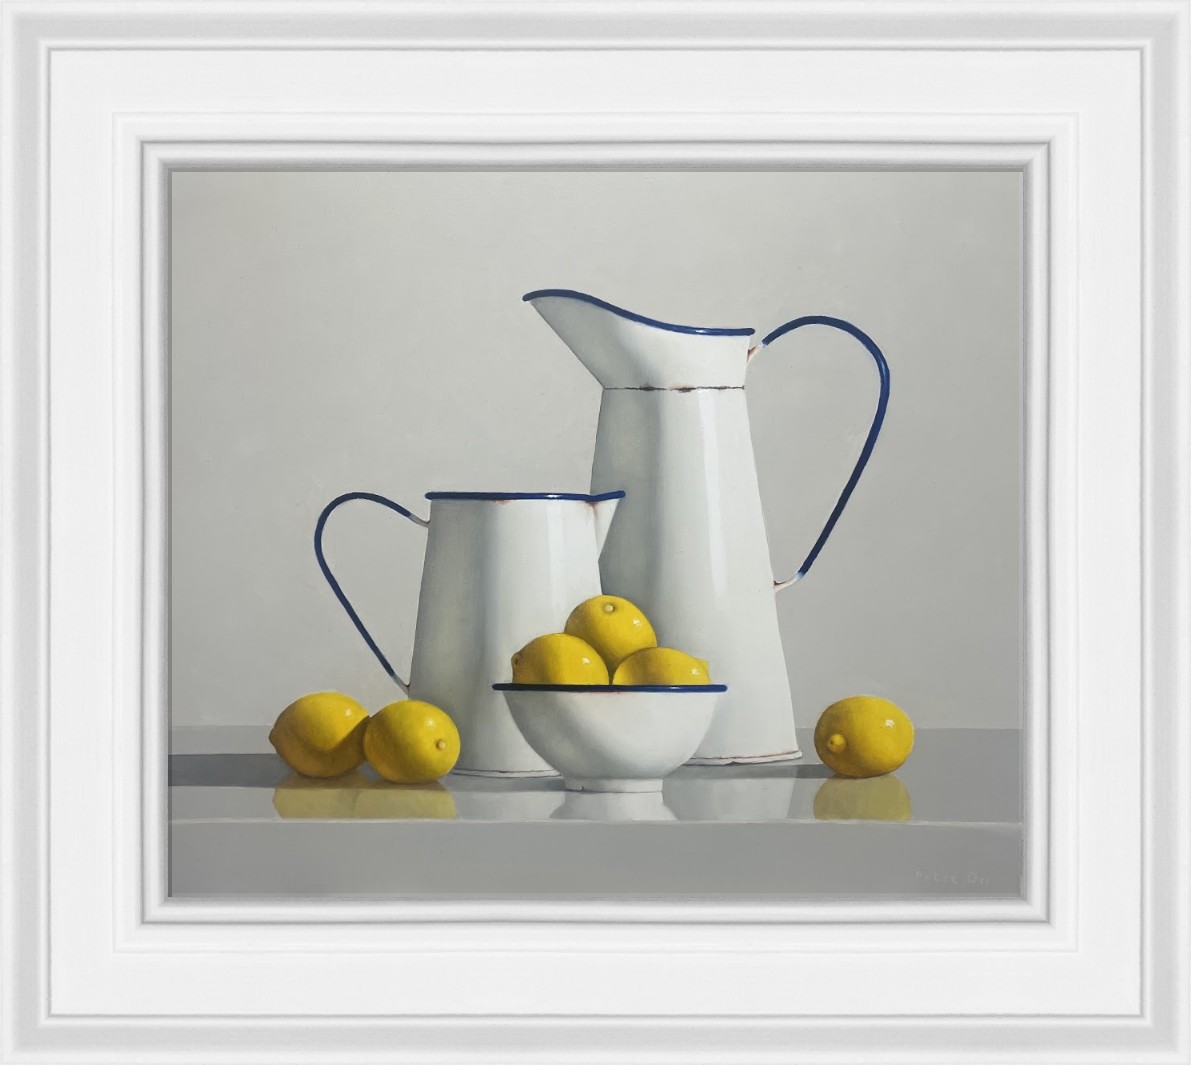  Vintage Enamelware with Lemons  by Peter Dee